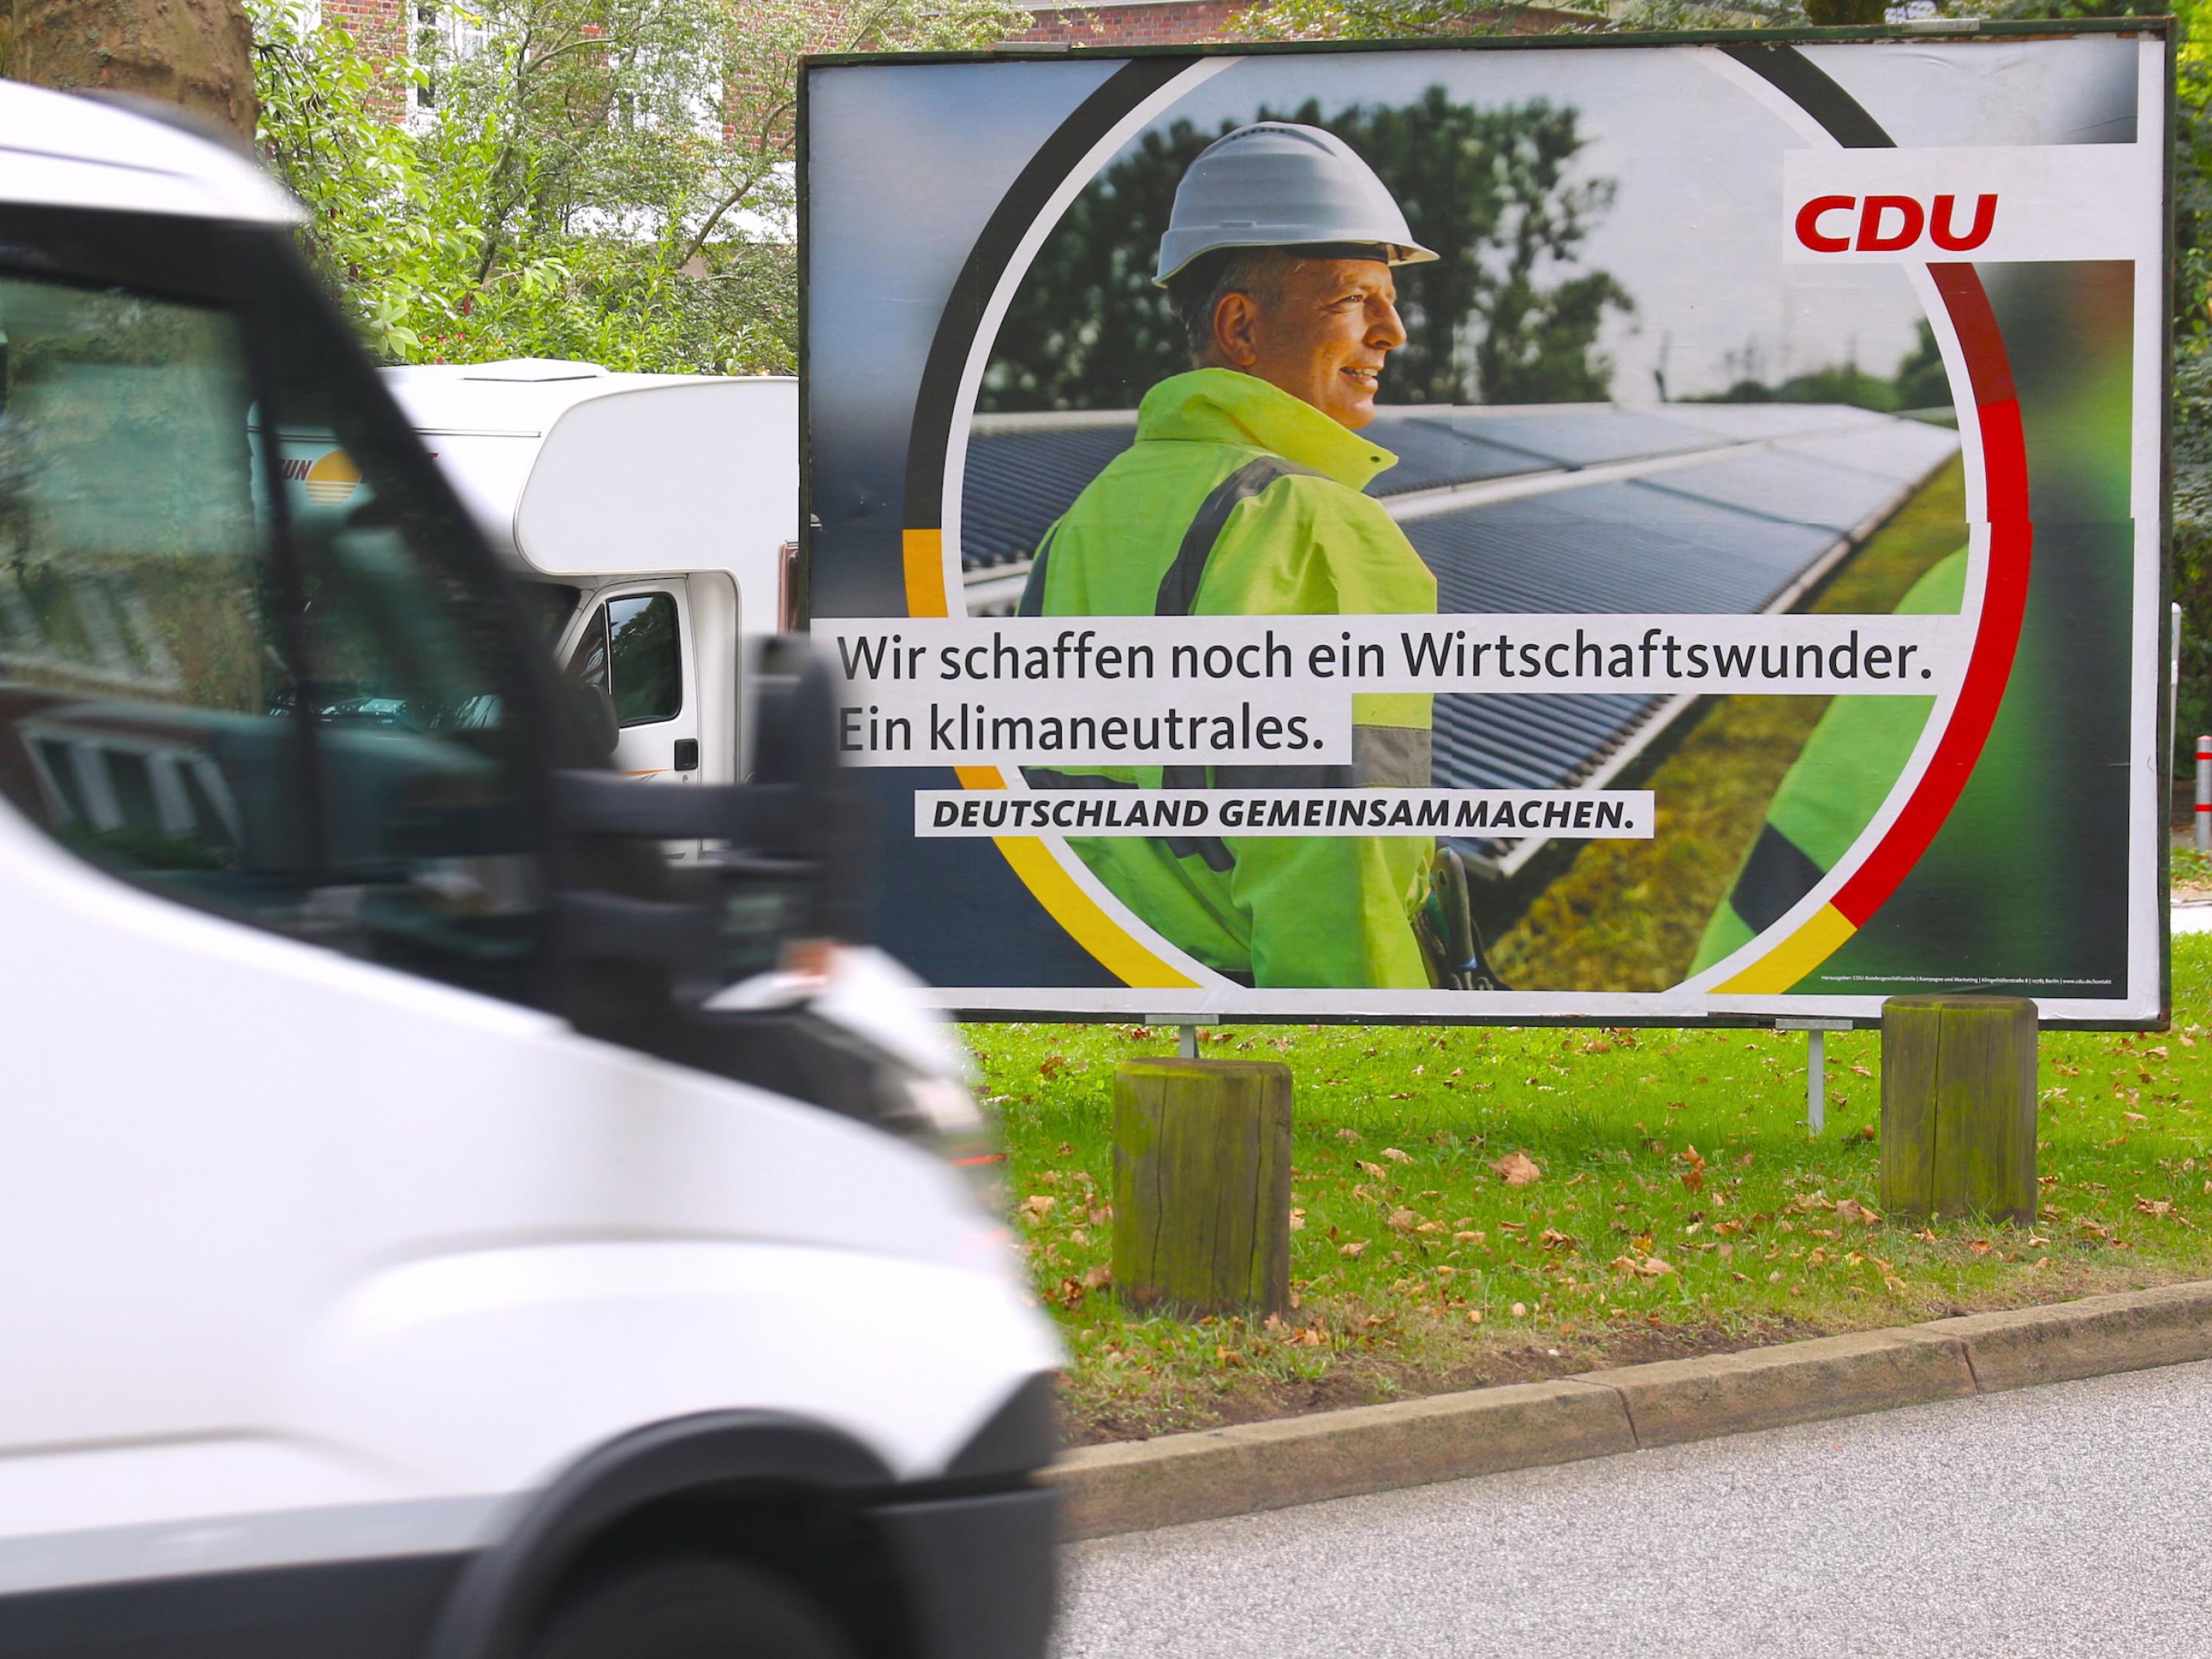 Ein Wahlplakat der CDU zeigt einen Mann mit Bauarbeiterhelm und neongelbem Anorak vor einer Reihe von Solarpanels. Der Slogan lautet: „Wir schaffen noch ein Wirtschaftswunder. Ein klimaneutrales.“ Das Plakat steht auf einem Grünstreifen an der Straße. Von links fährt ein weißer Kleinlaster ins Bild.